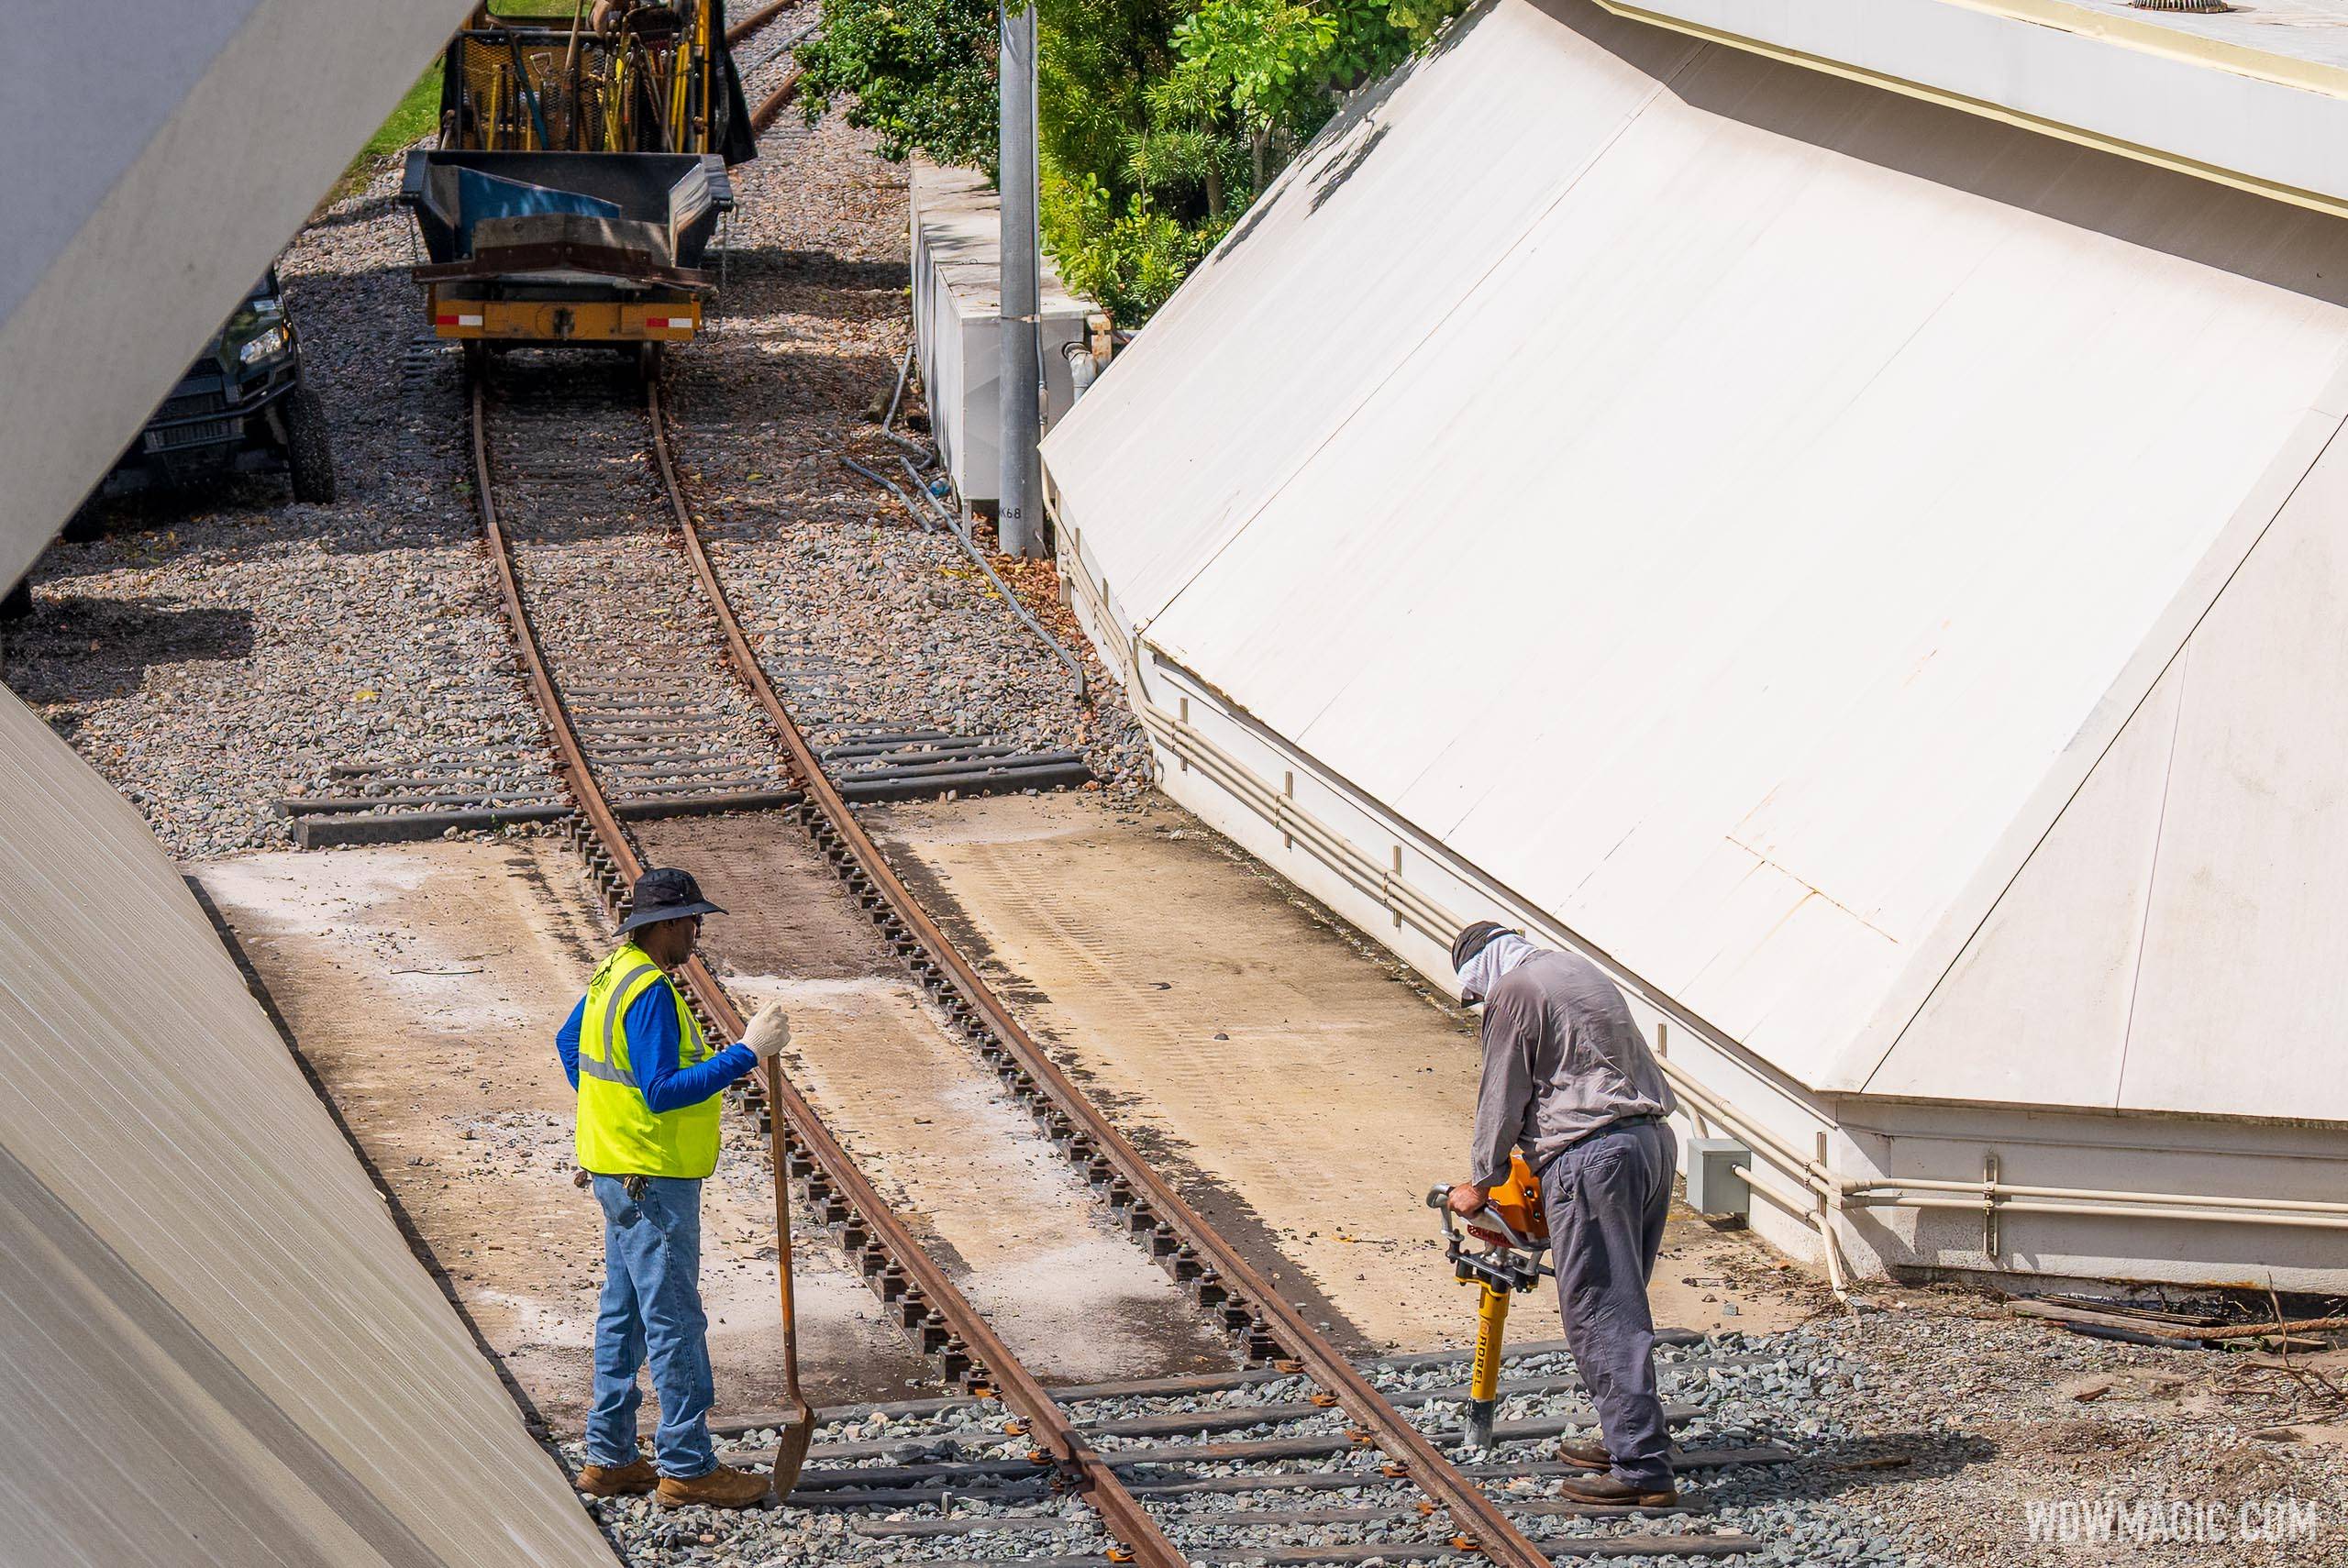 Walt Disney World Railroad track installation in Tomorrowland - May 23 2022